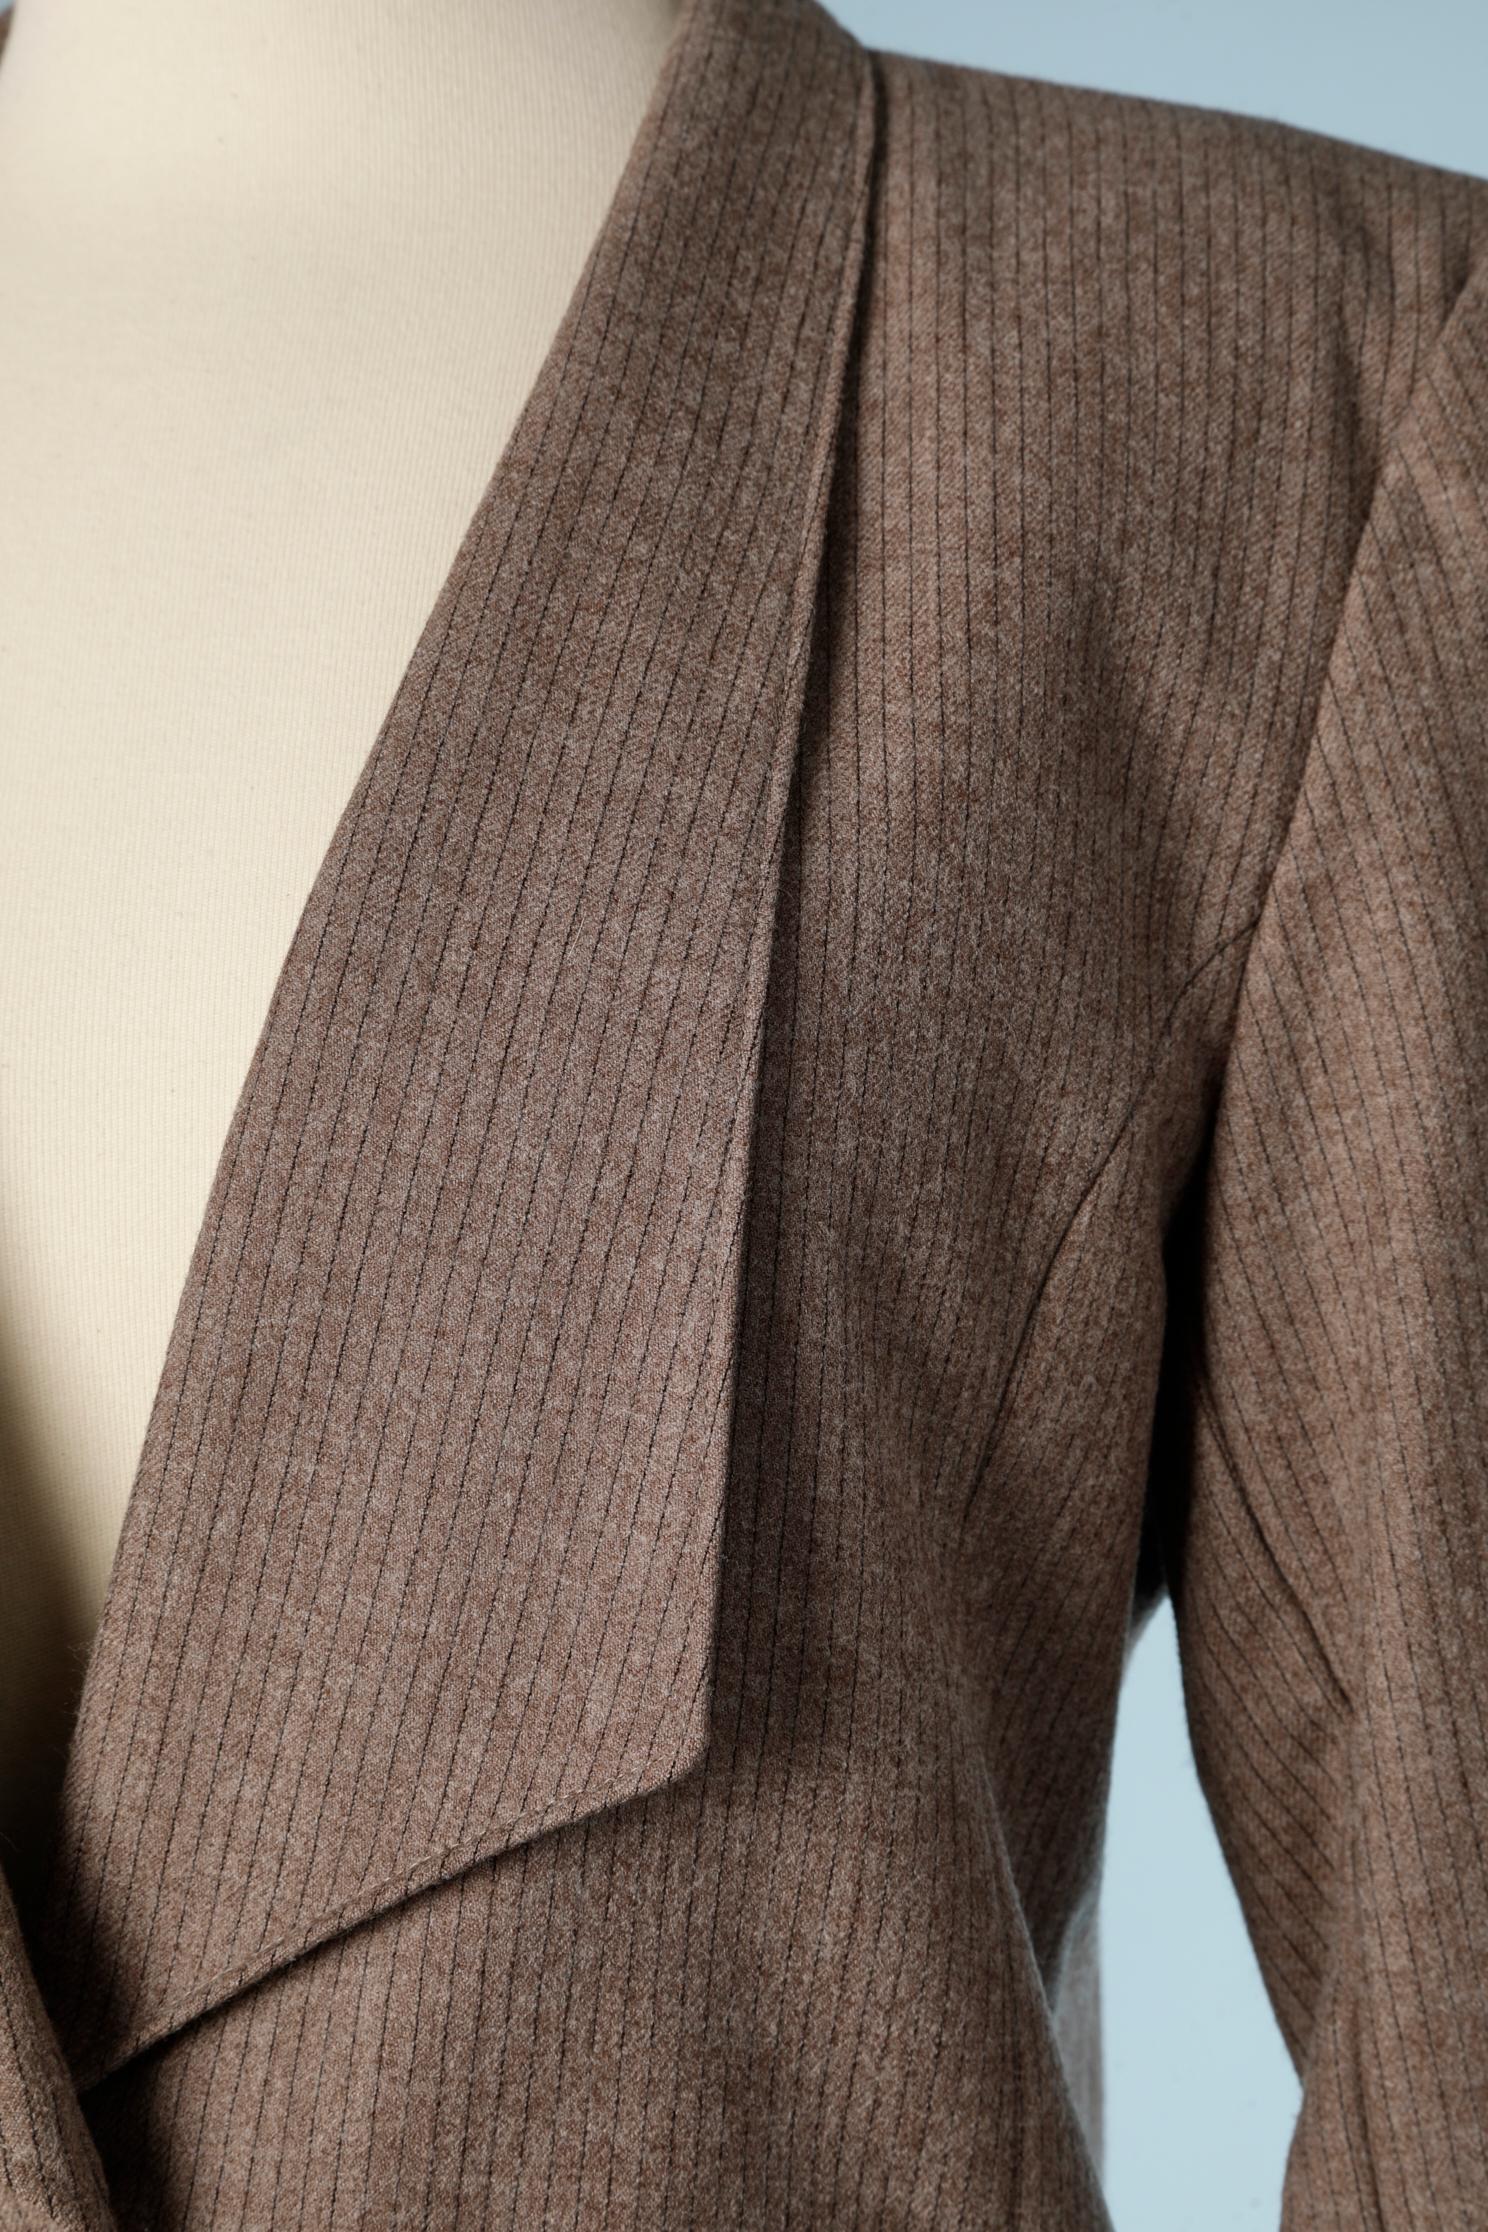 Tailleur jupe en laine marron clair à fines rayures. La jupe est enveloppée et comporte un bouton à l'avant avec quelques plis.
TAILLE S